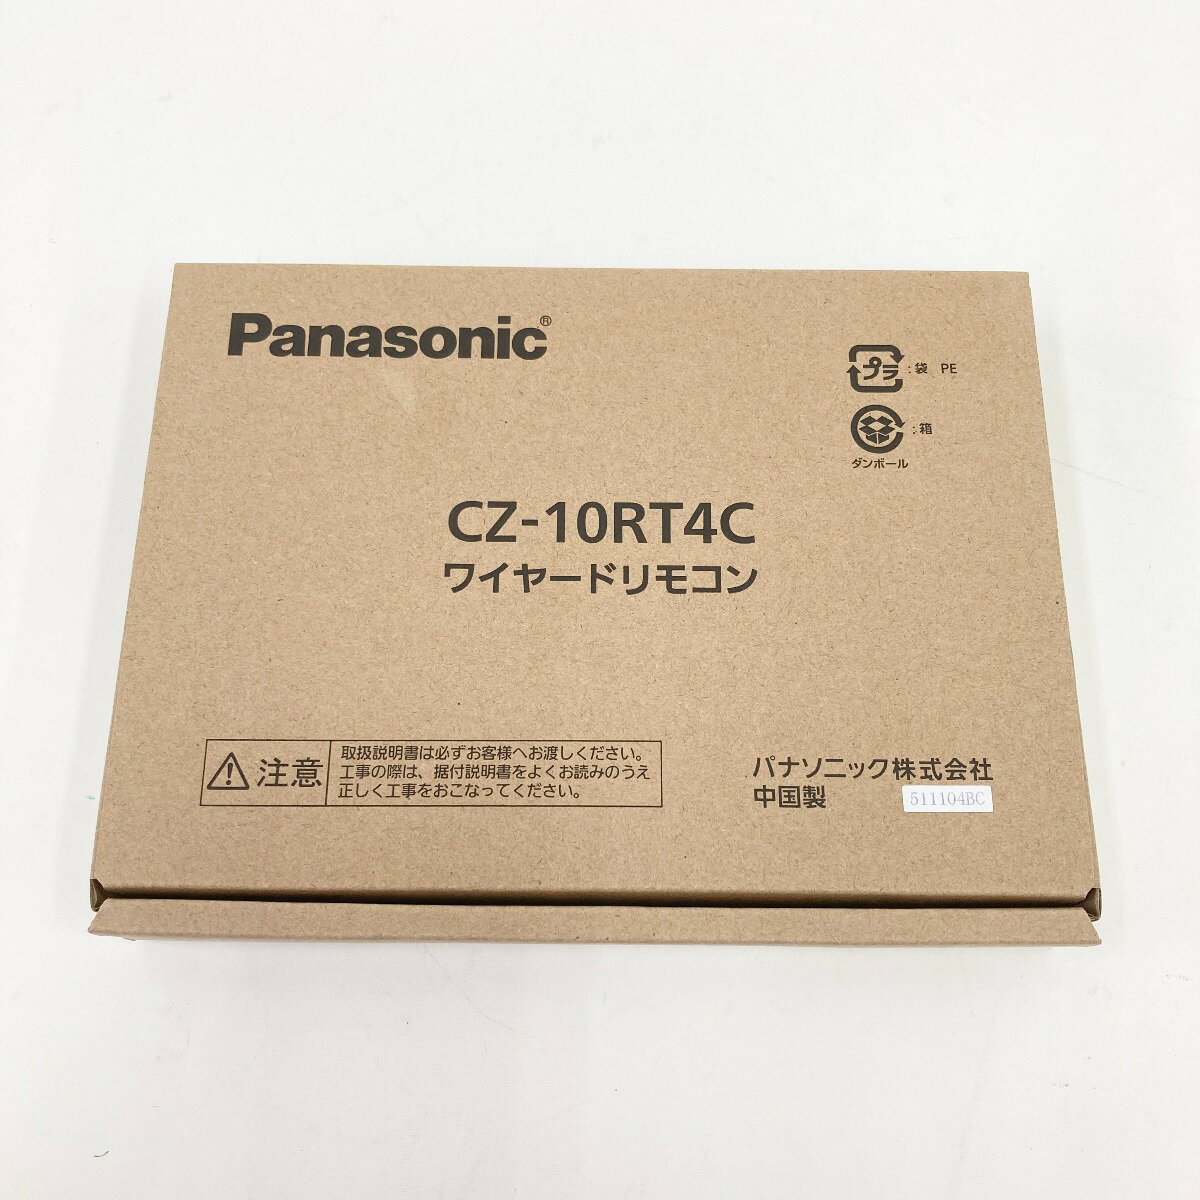 〇〇【中古】Panasonic パナソニック ワイヤードリモコン CZ-10RT4C 未使用品 Sランク